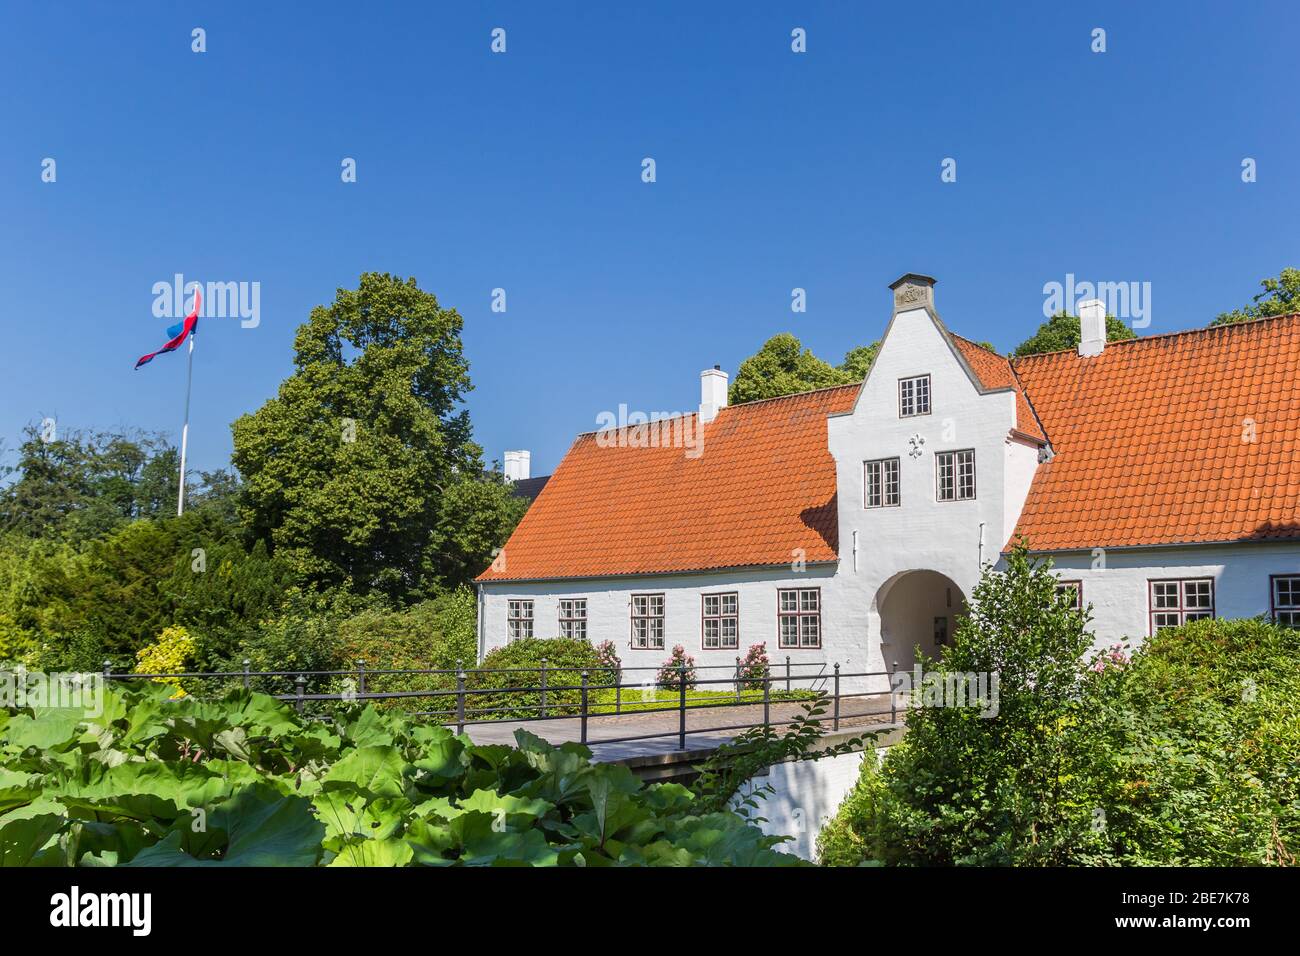 Schackenborg Schloss in der historischen Stadt Mogeltonder, Dänemark Stockfoto